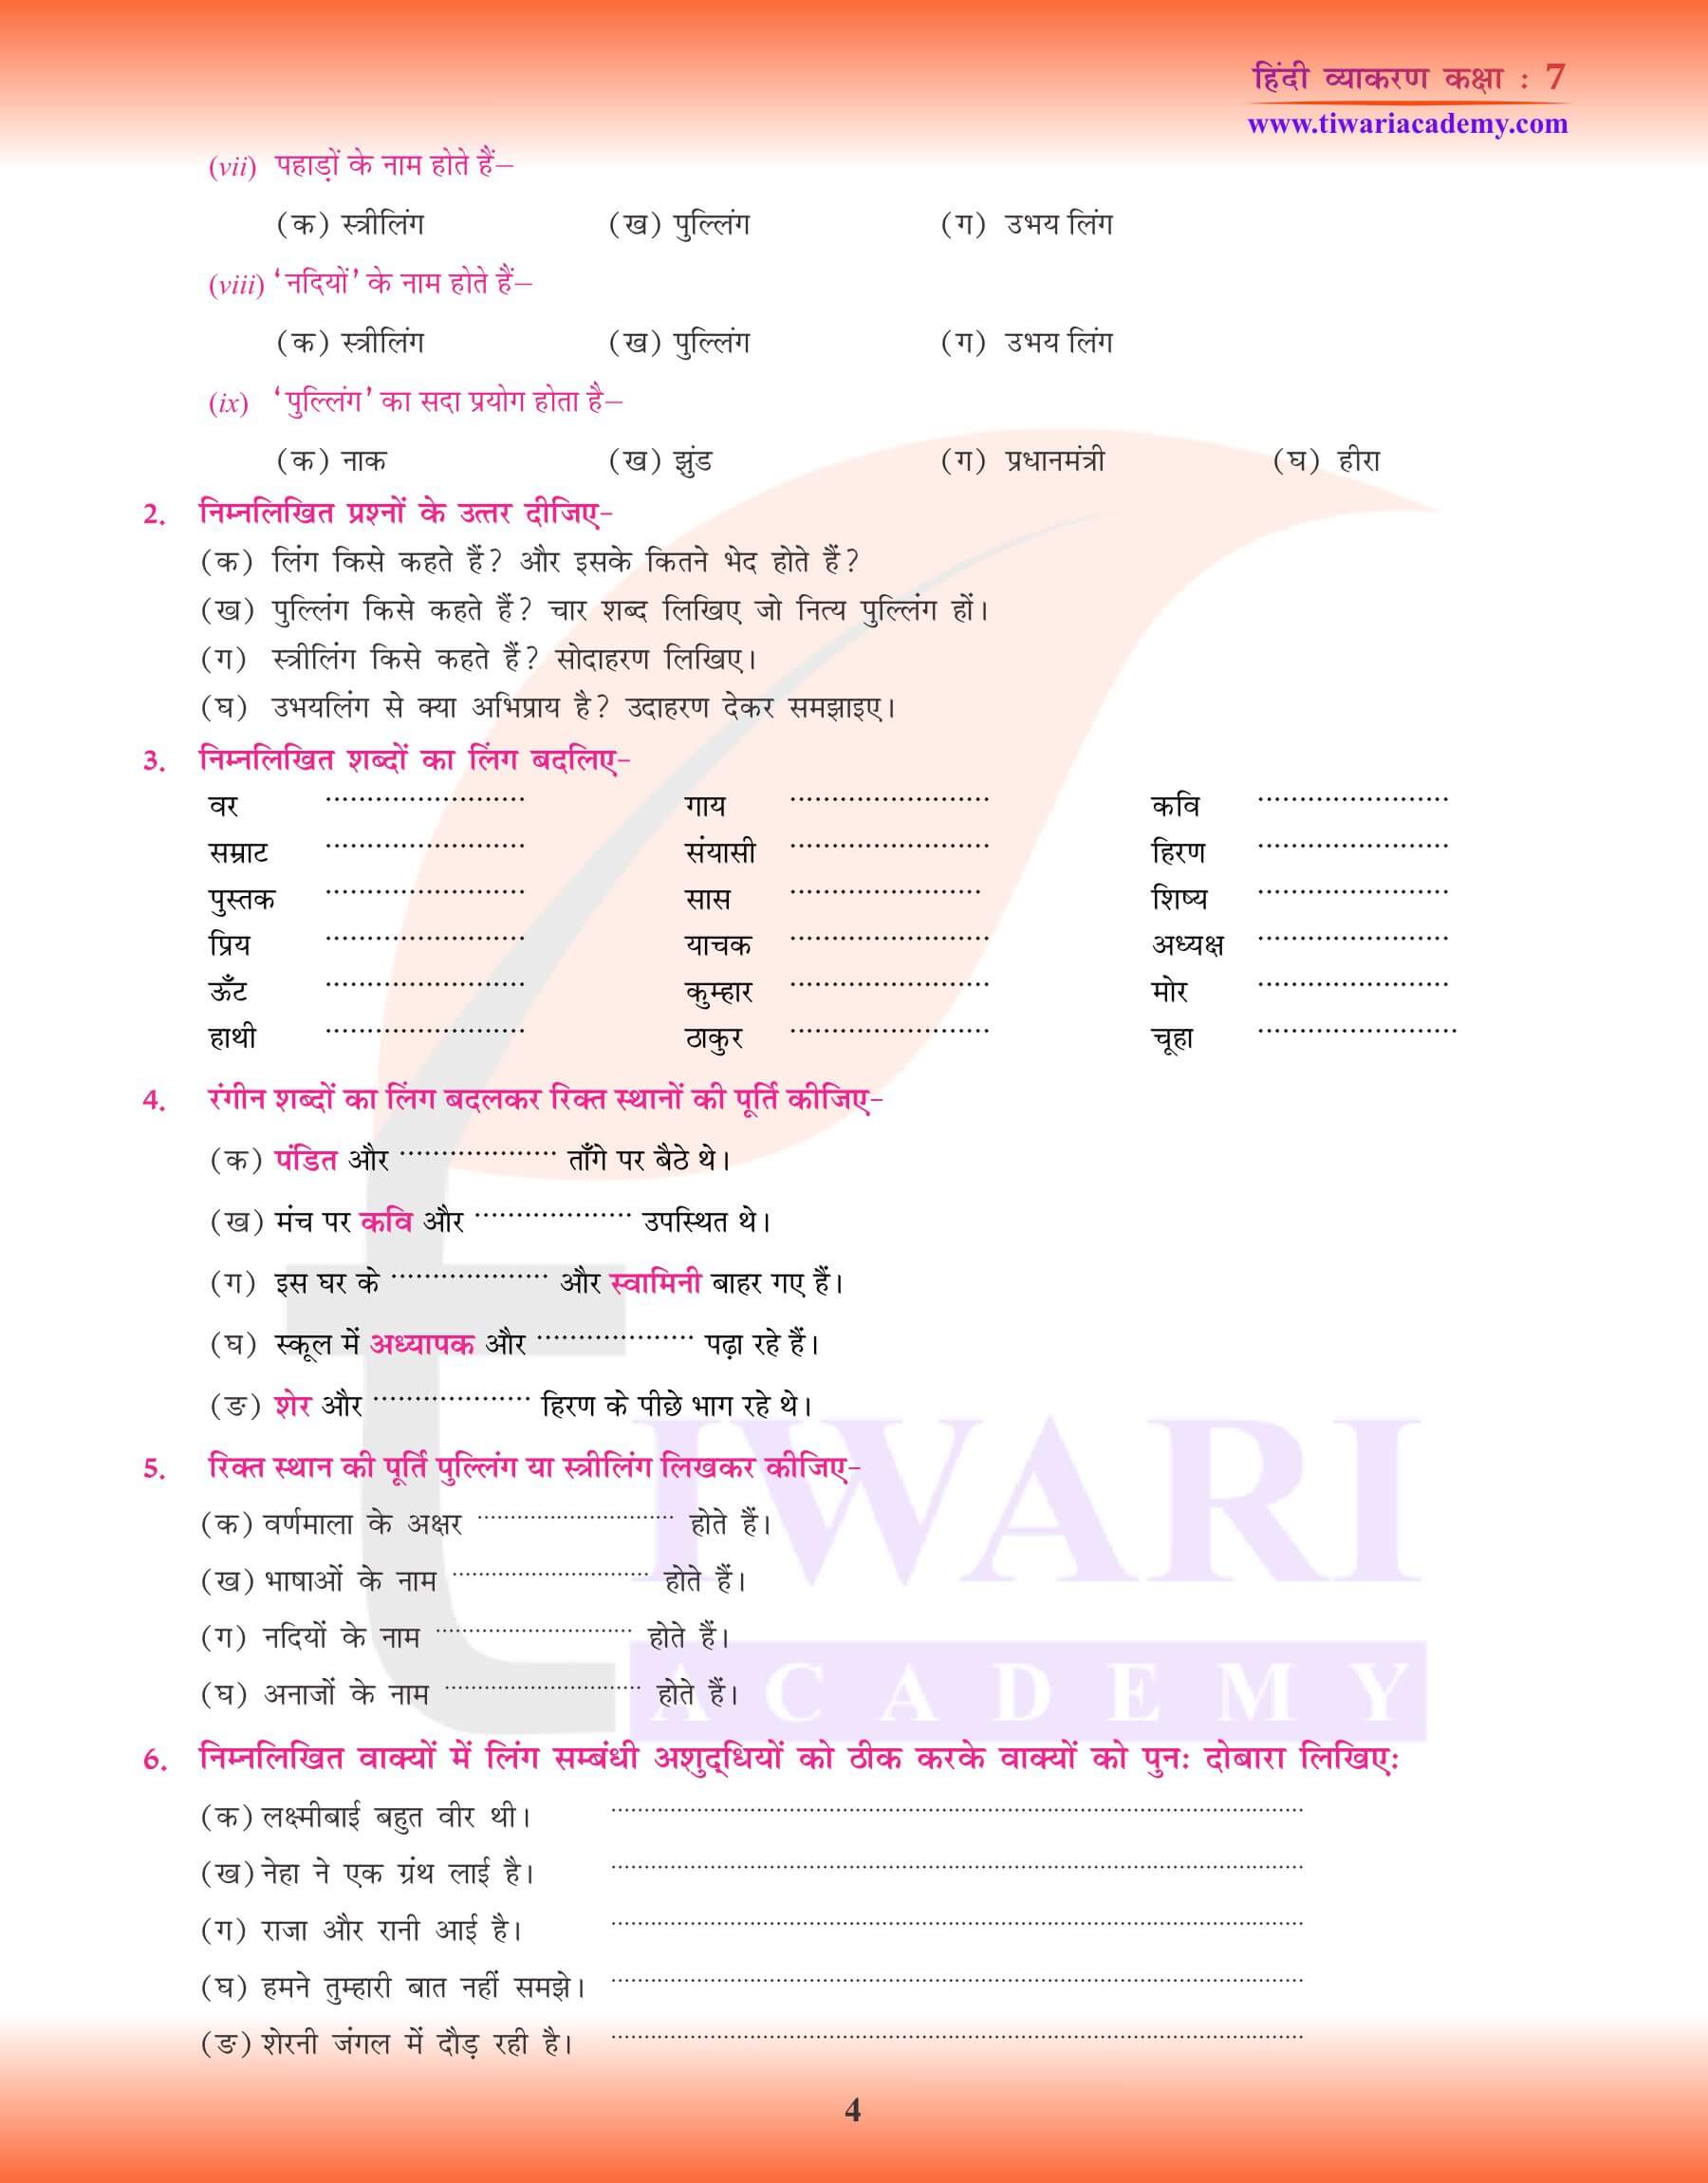 कक्षा 7 हिंदी व्याकरण अध्याय 7 लिंग बदलने के उदाहरण